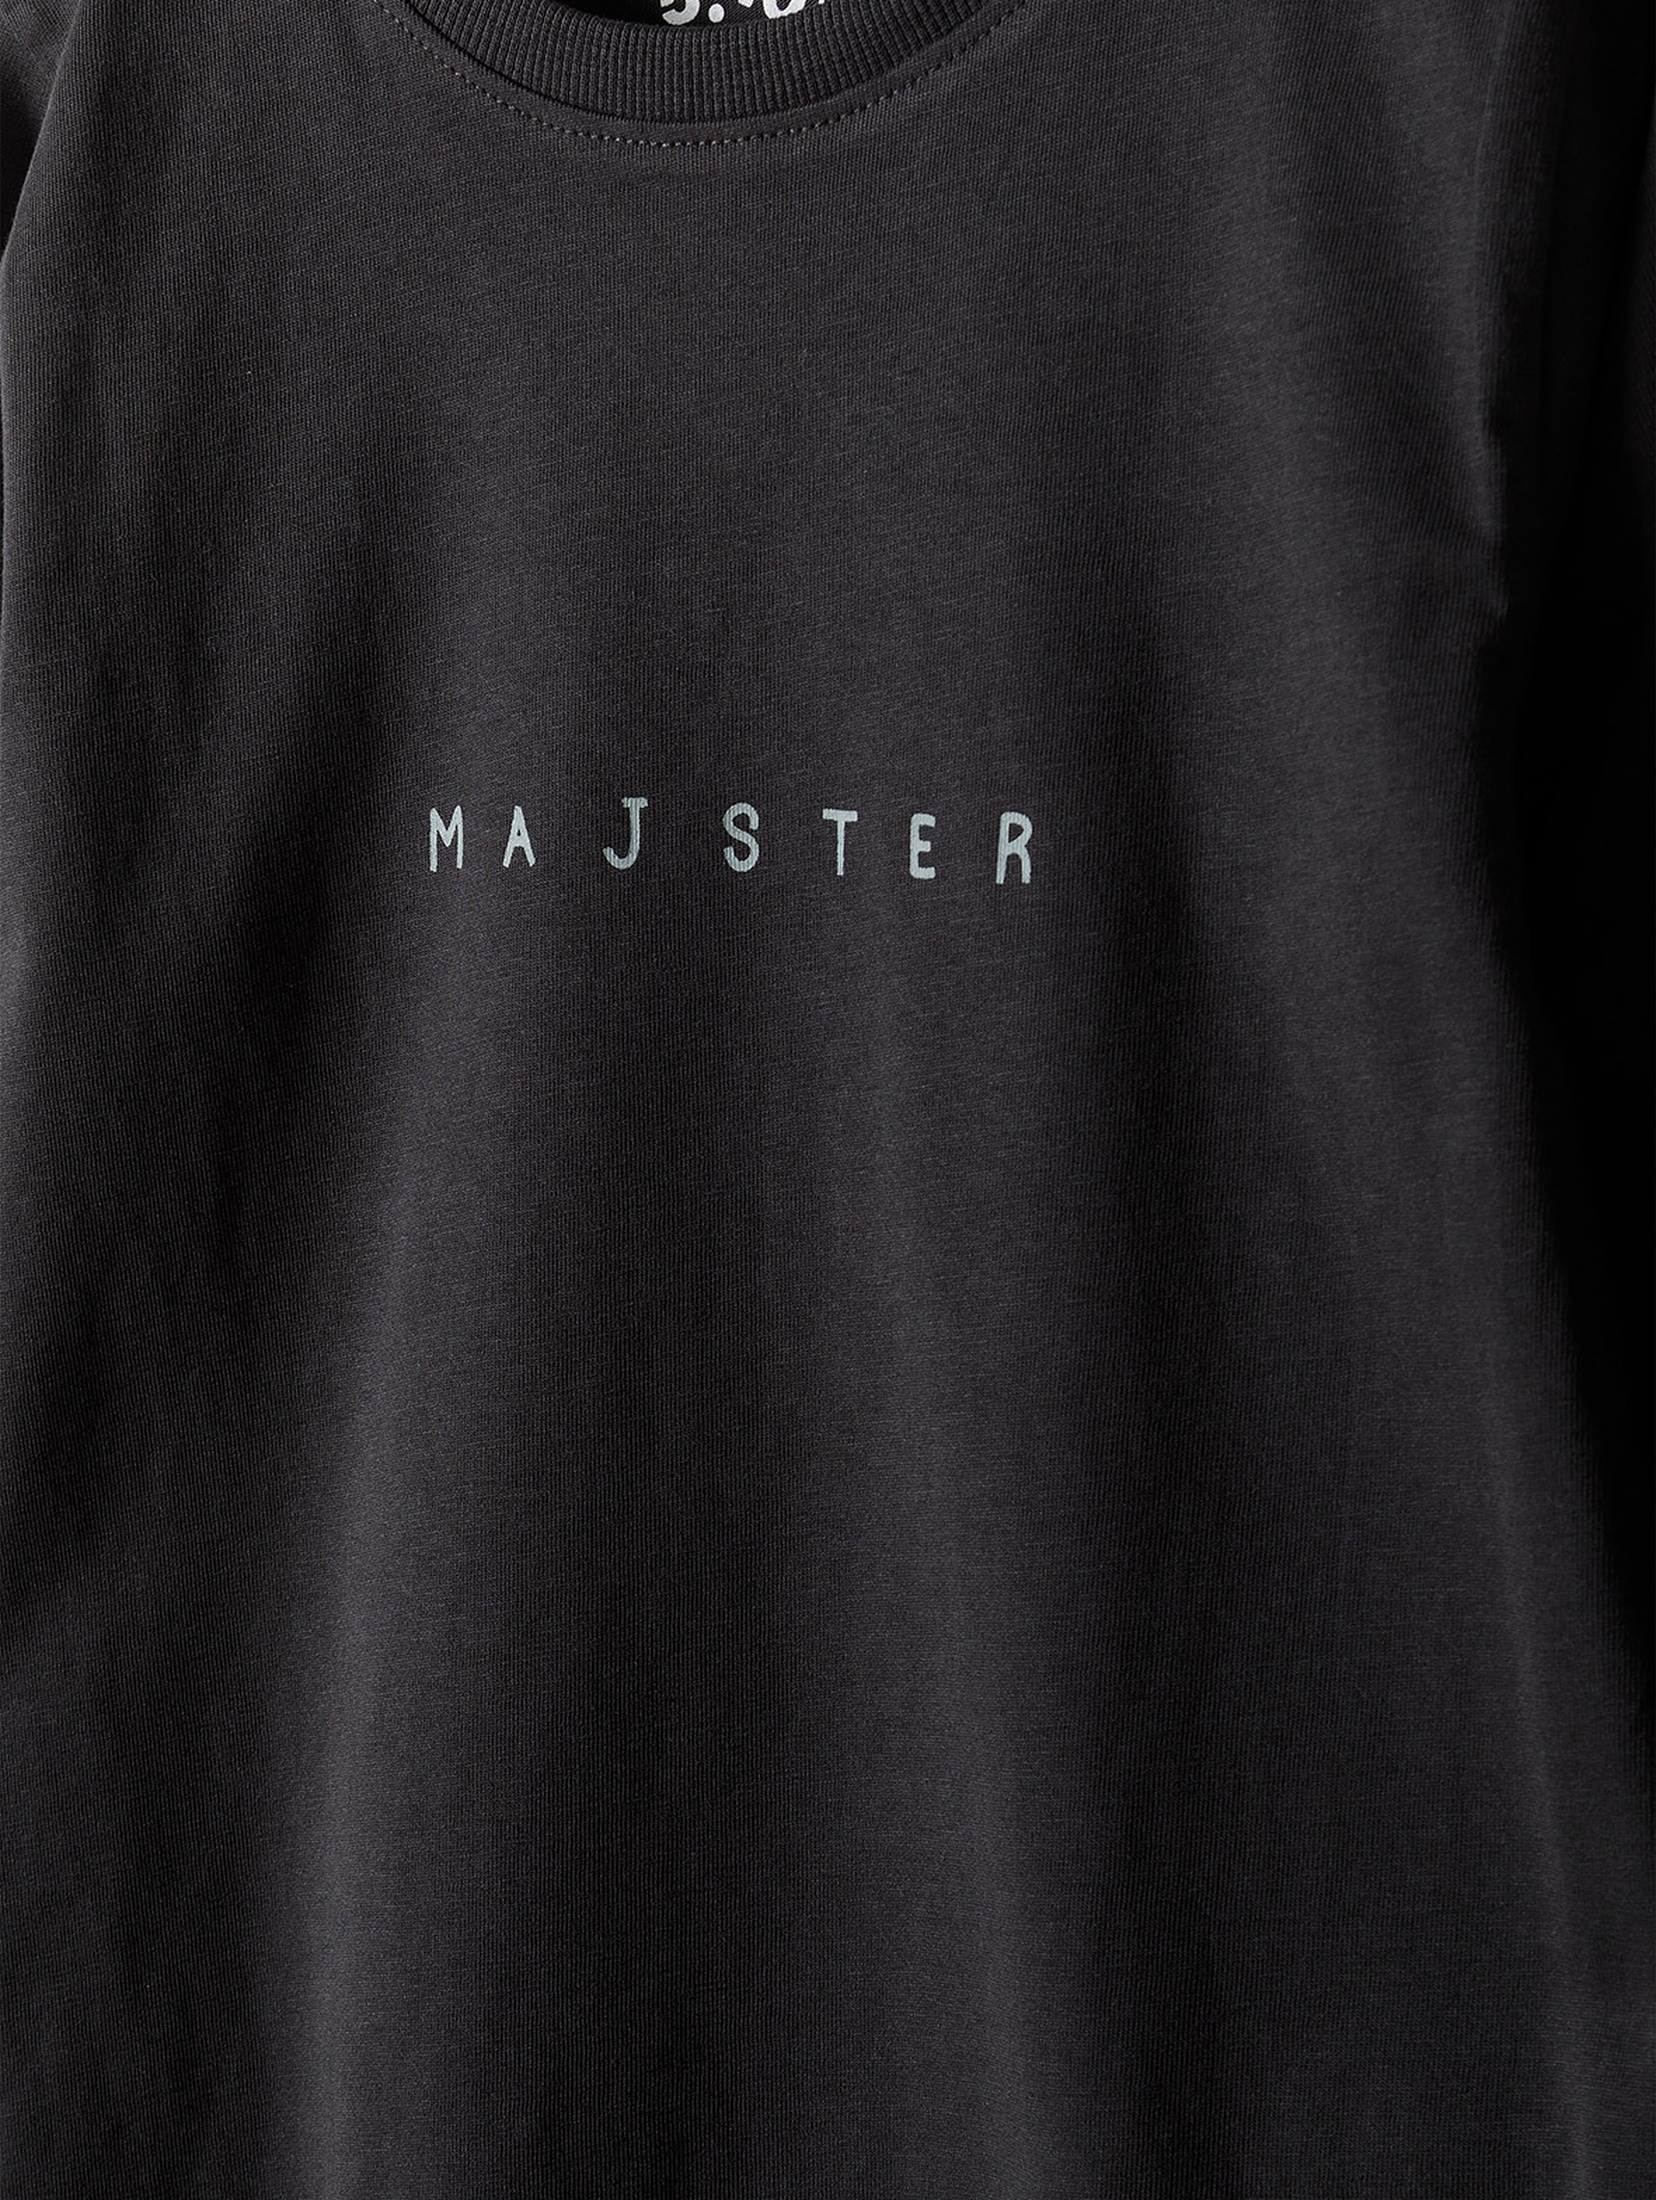 Grafitowa bluzka bawełniana dla chłopca z napisem - Majster